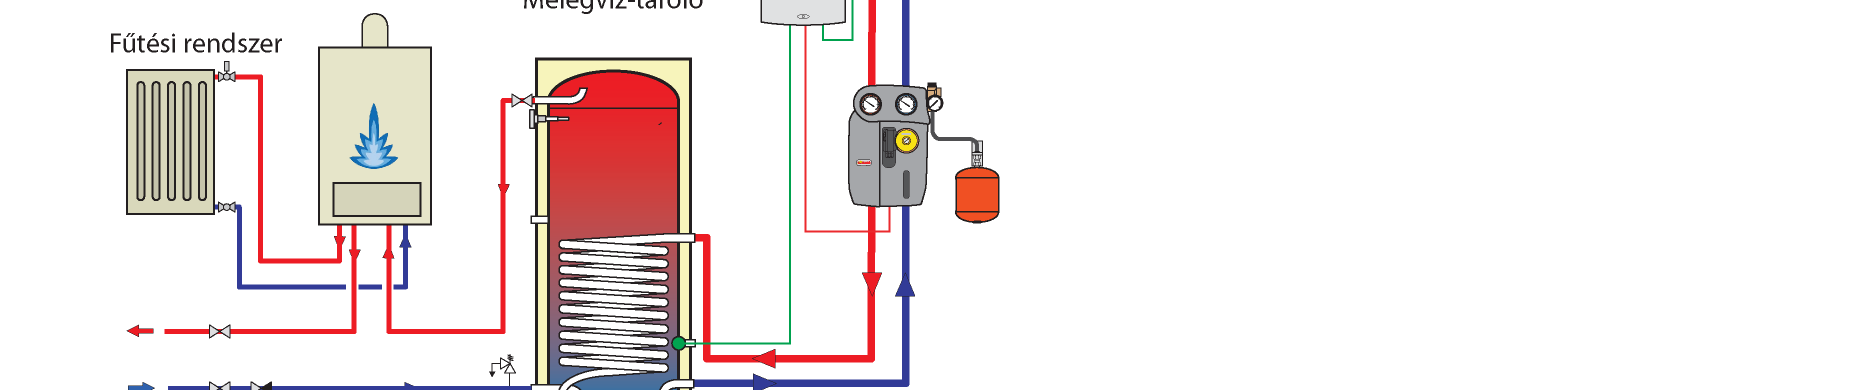 Melegvíz készítés Használati-melegvíz készítő rendszer egy hőcserélős előfűtő melegvíztárolóval, kombi